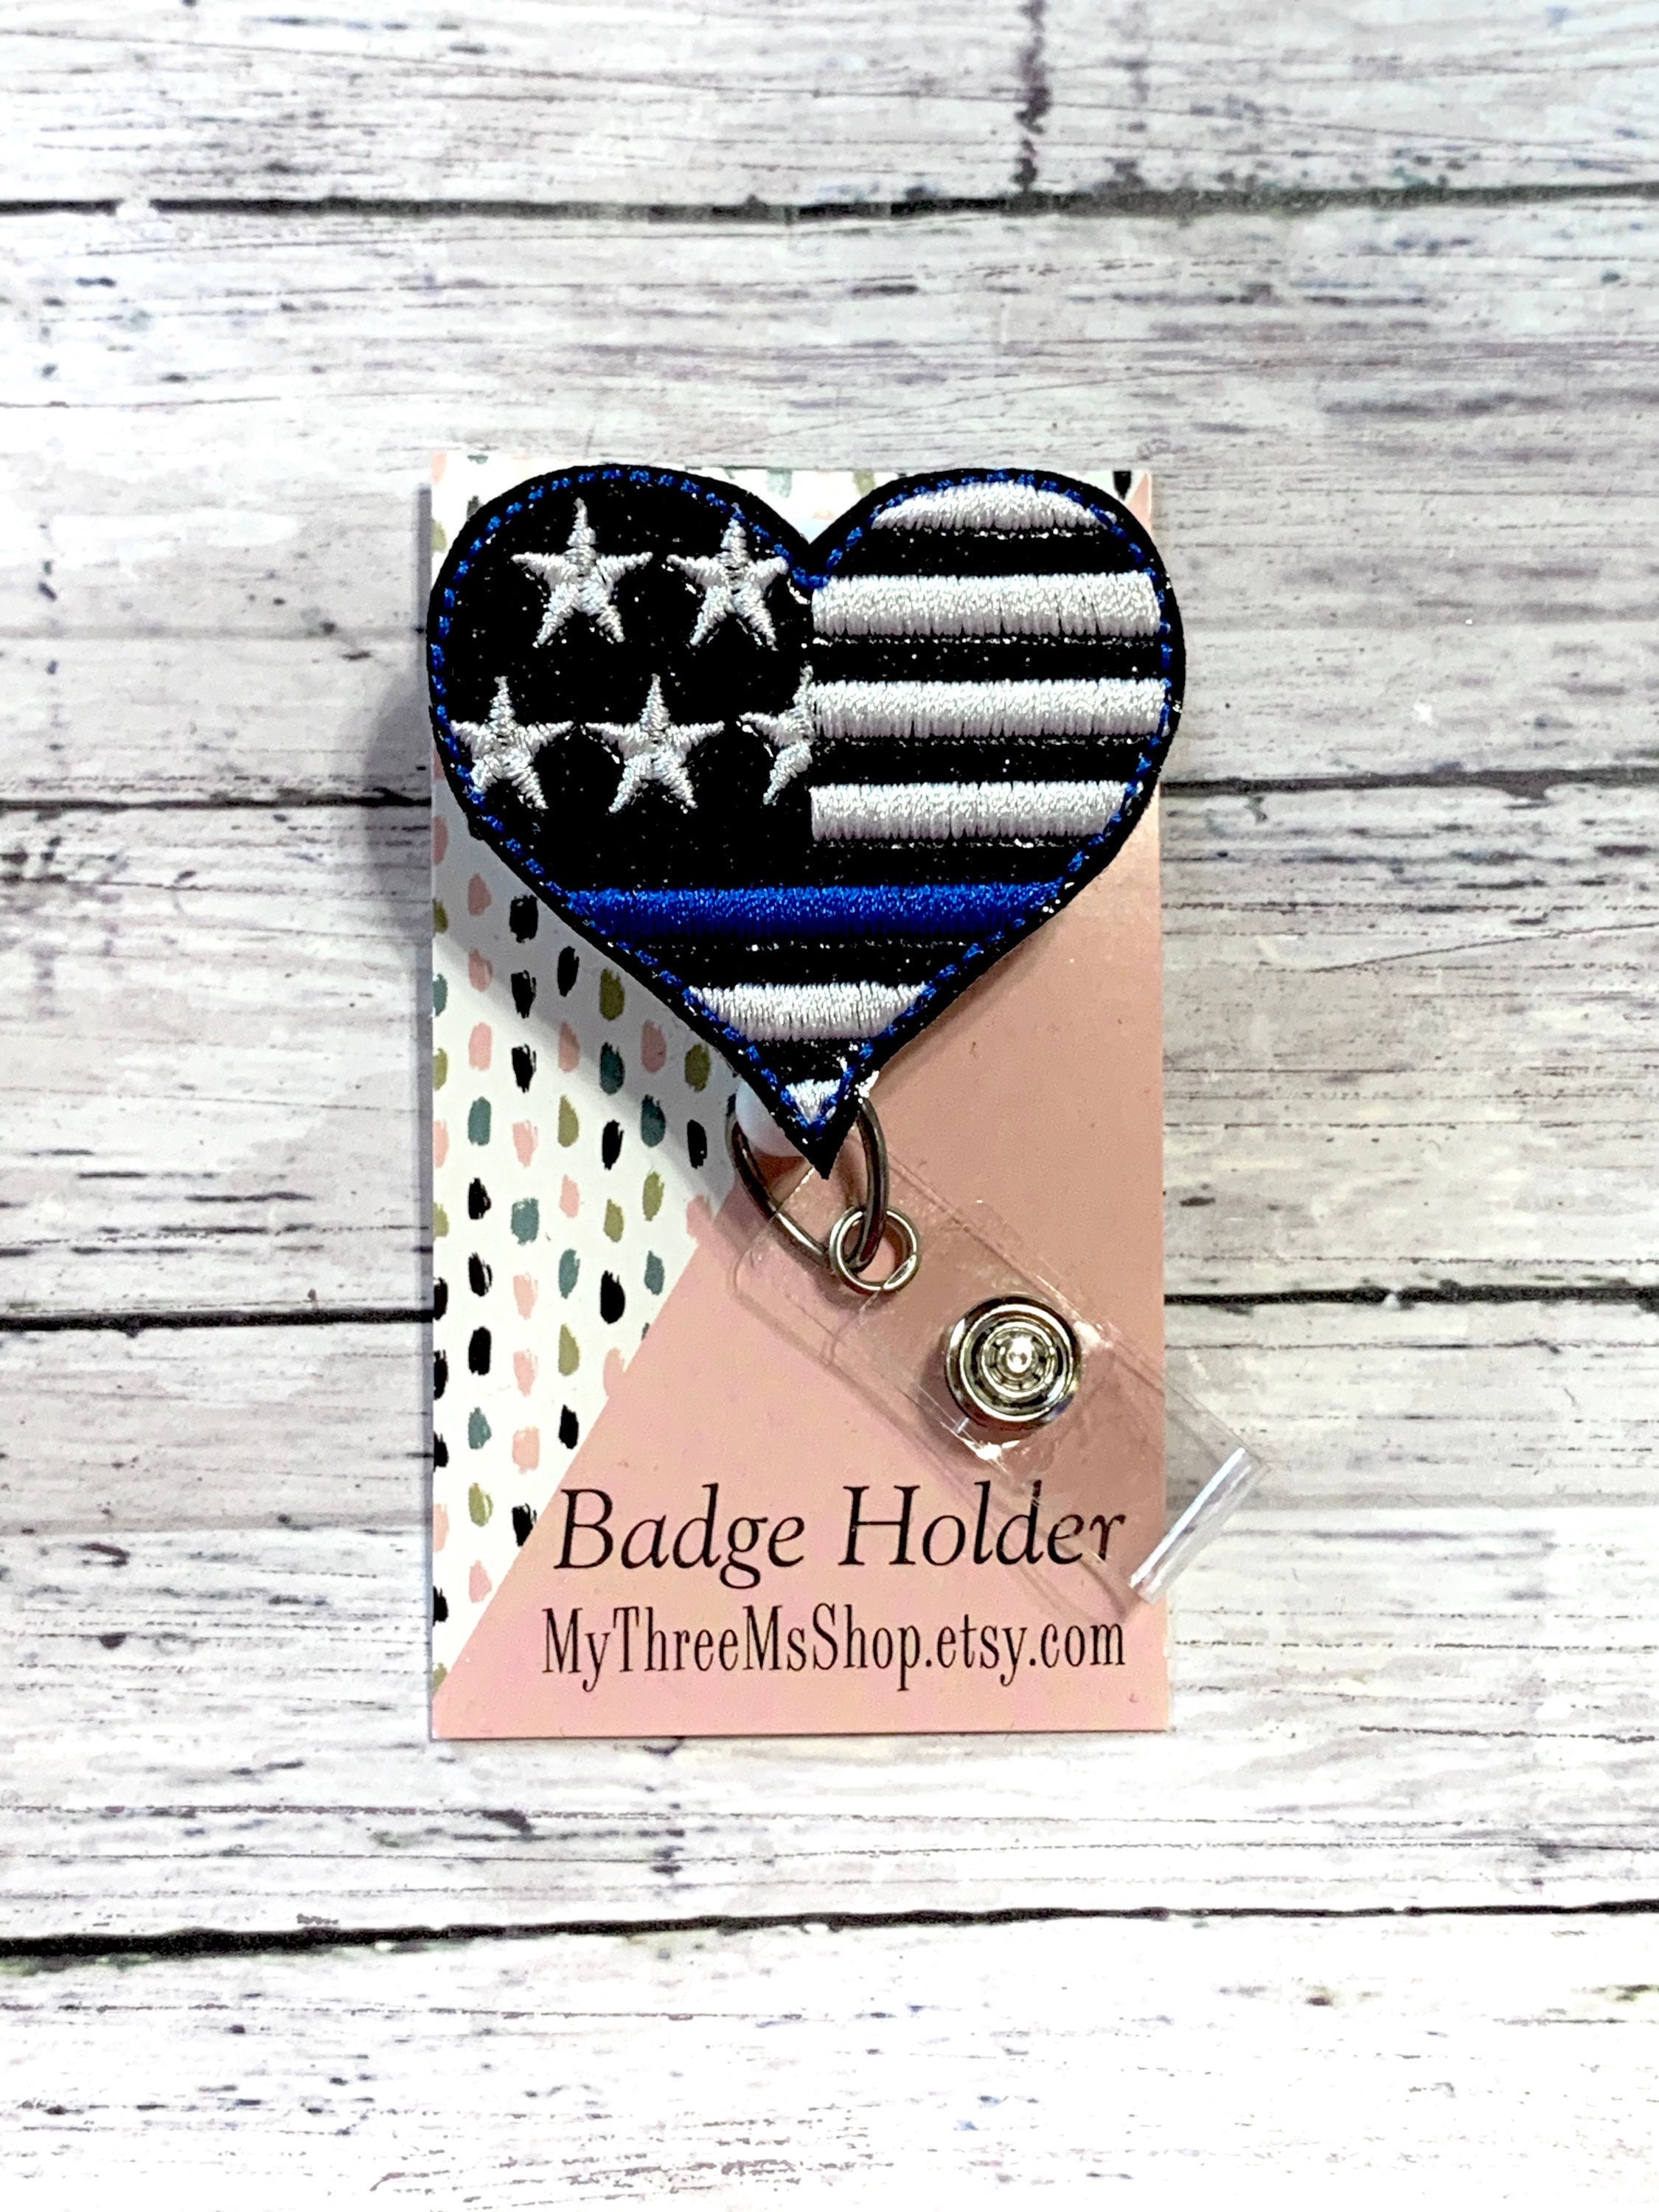 Blue Line Badge Reel, Support Police Badge Holder, Nurse Badge